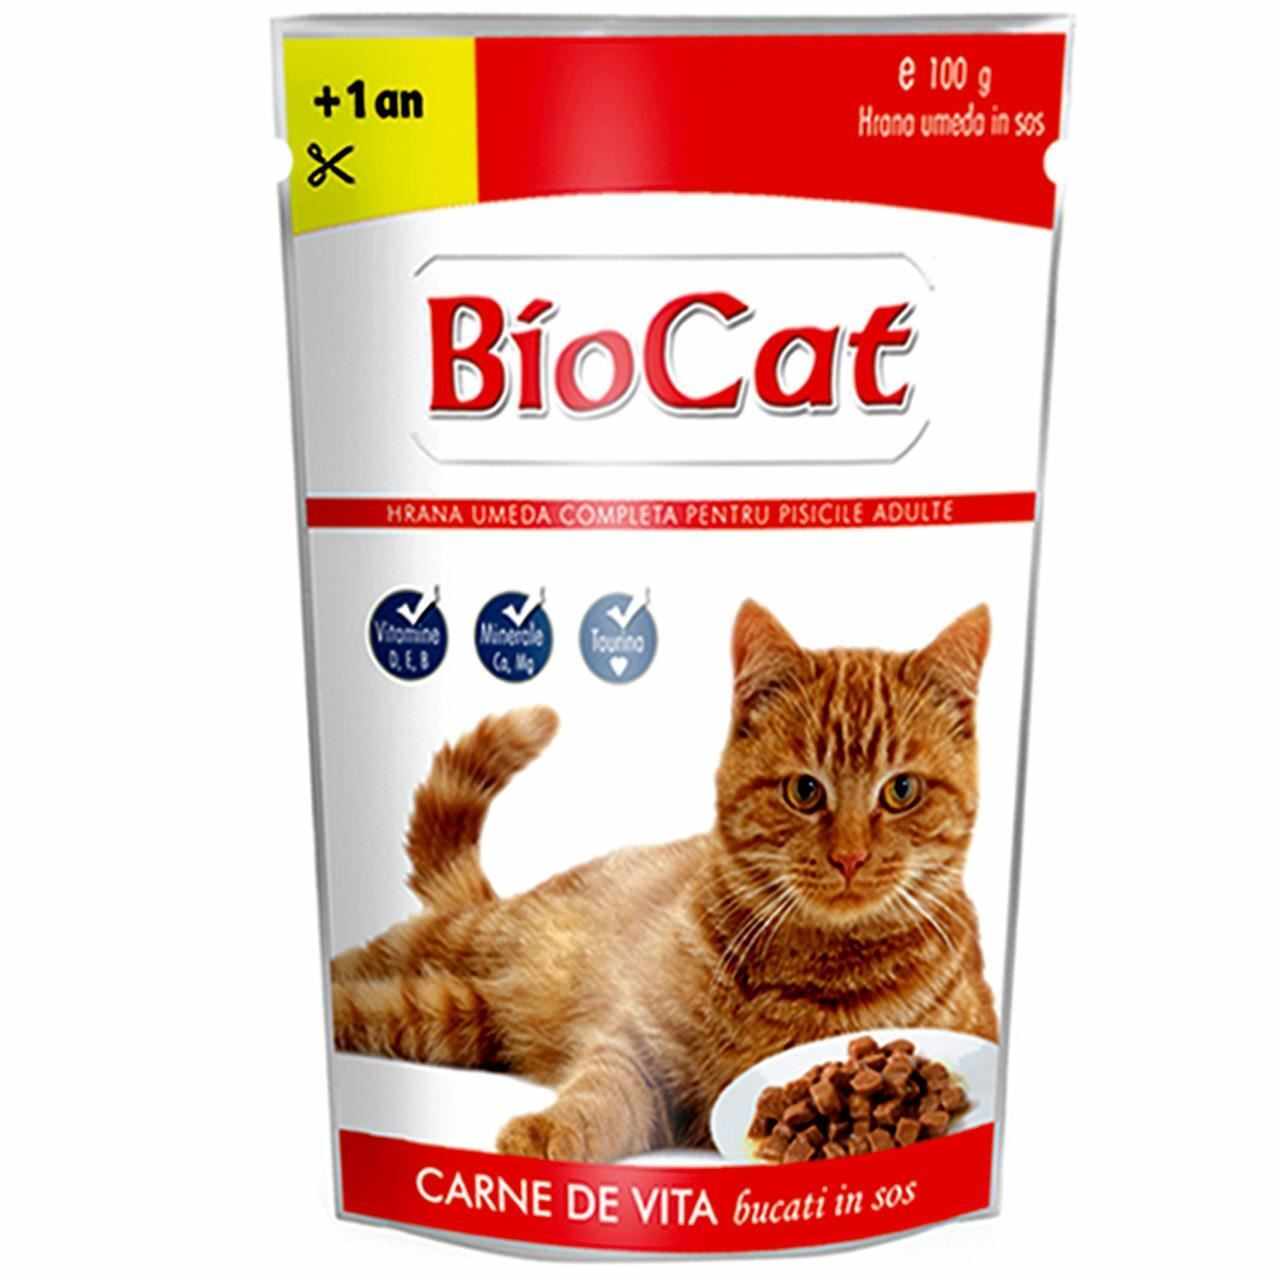 Hrana Umeda Pentru Pisici Biocat Plic Vita In Sos 100 g